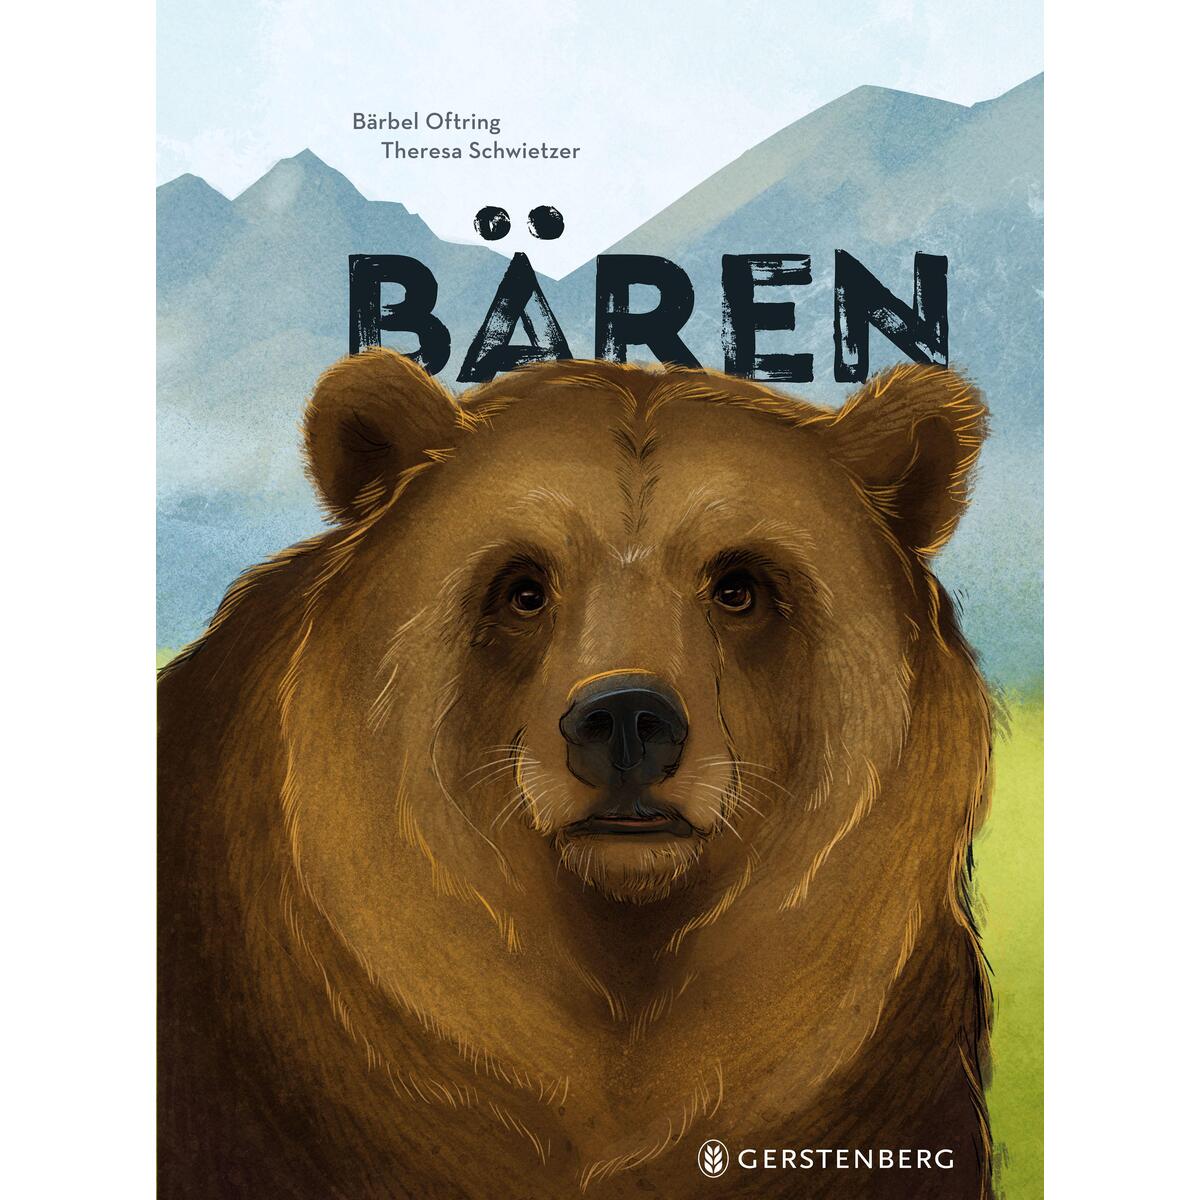 Bären von Gerstenberg Verlag